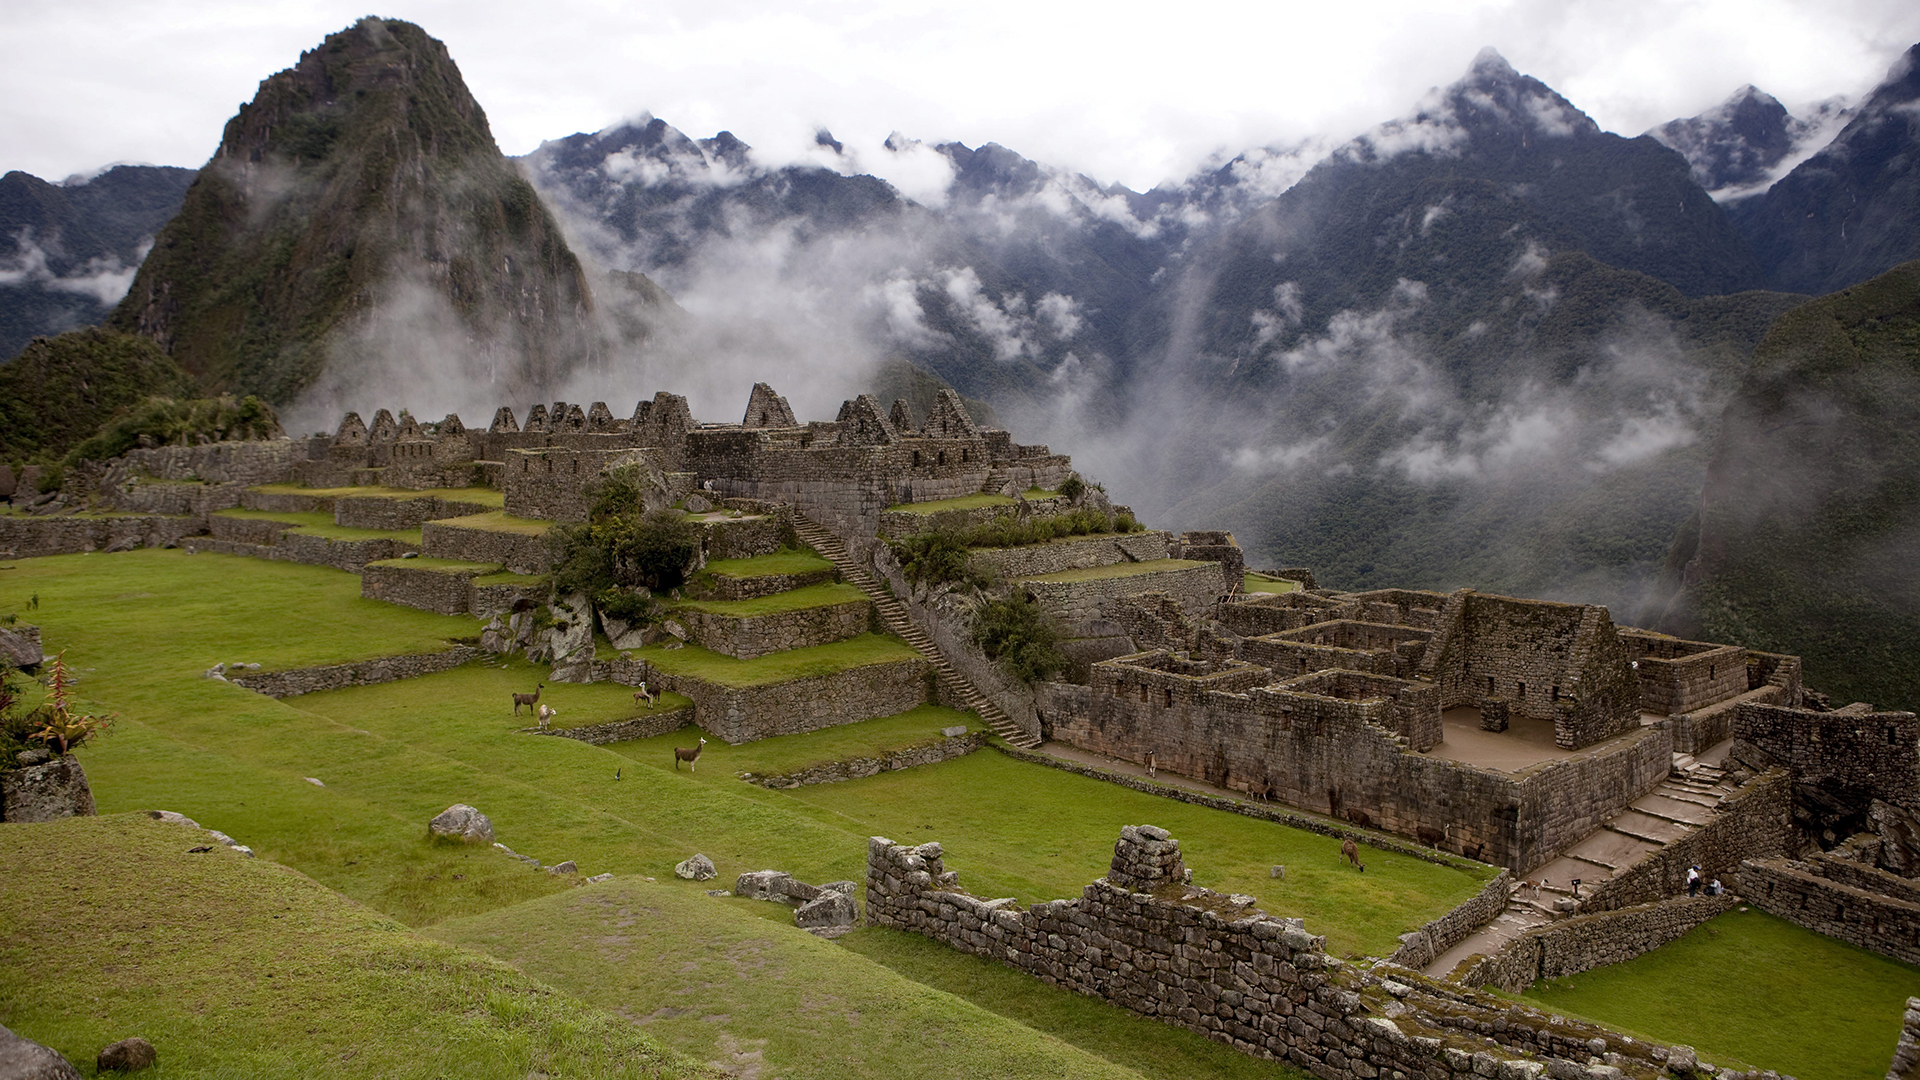 Machu Picchu (Archivbild) | picture alliance/dpa